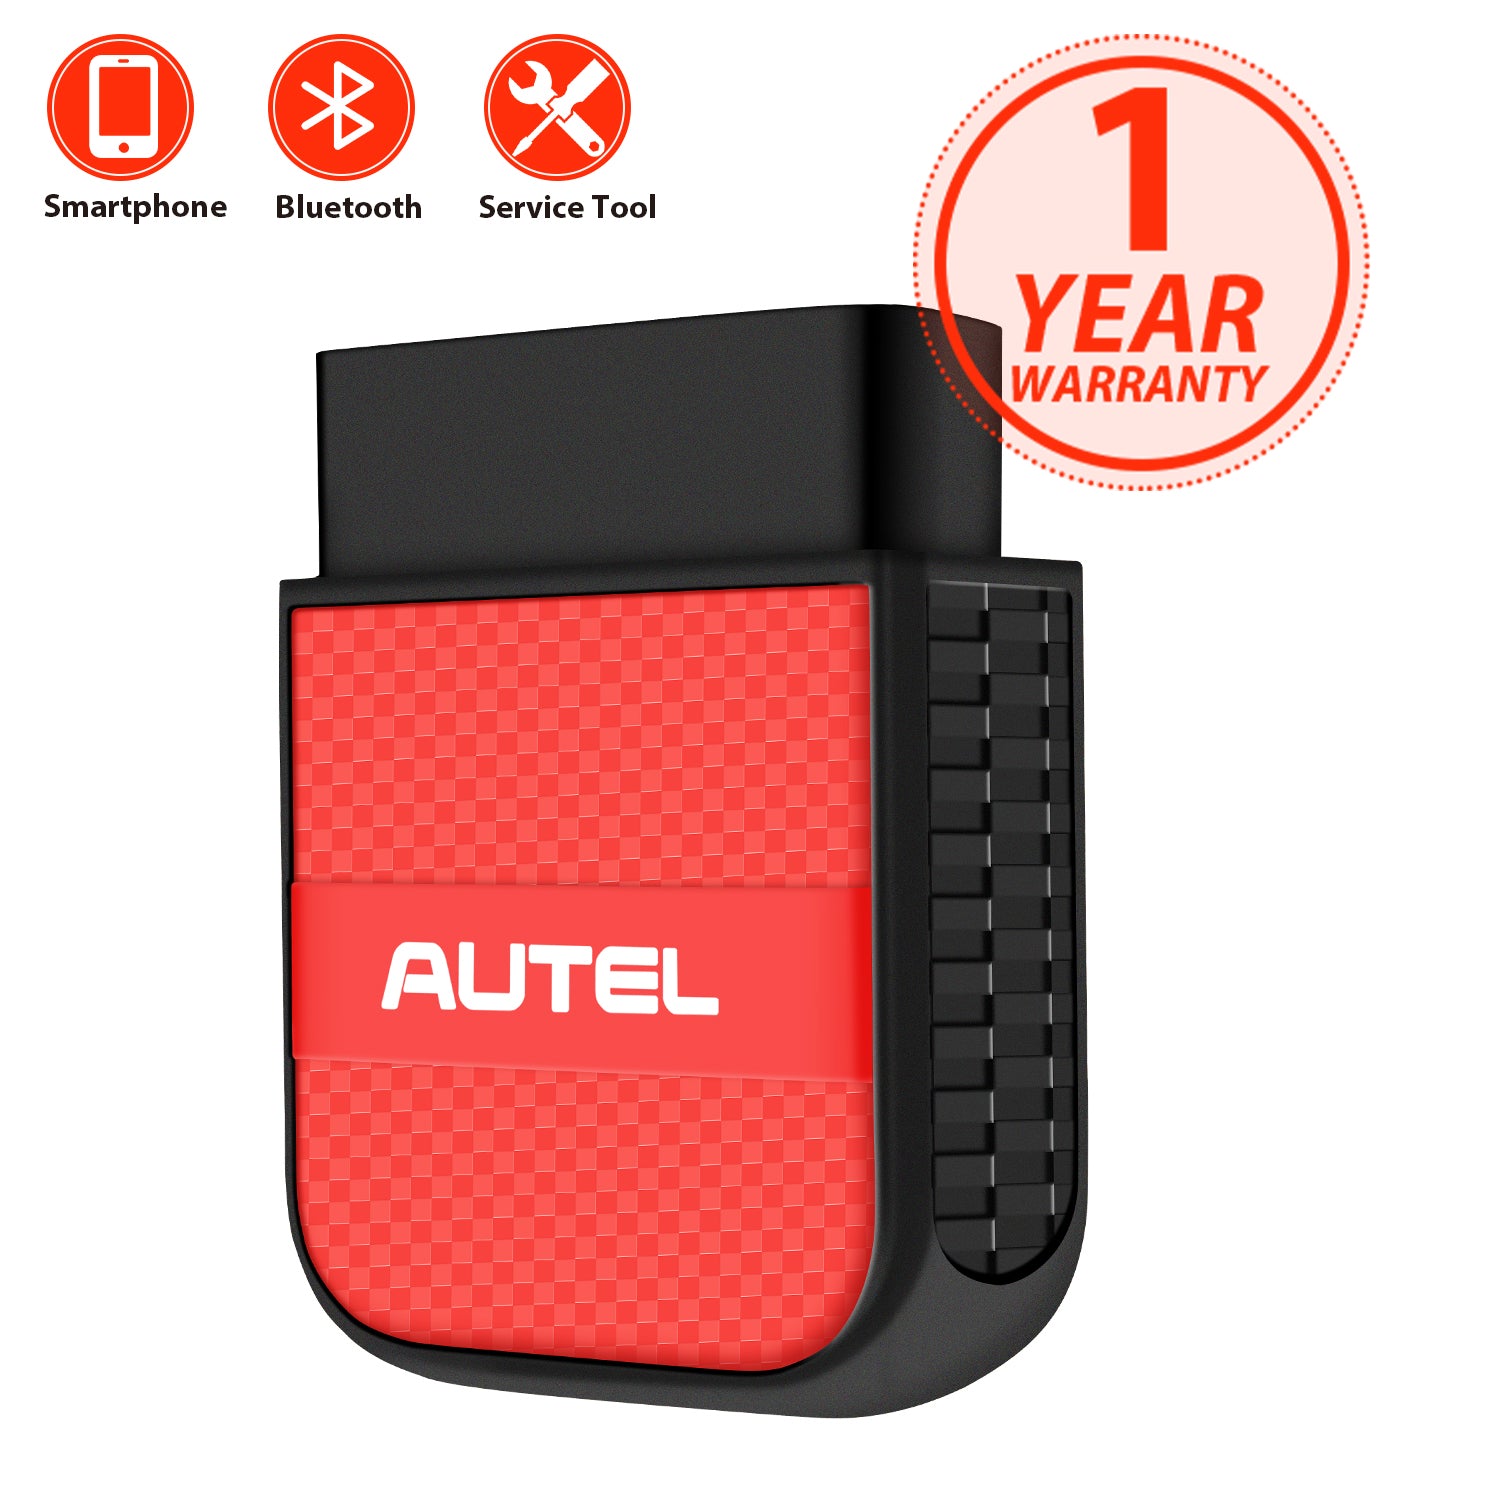 Autel AP200c 1-year warranty